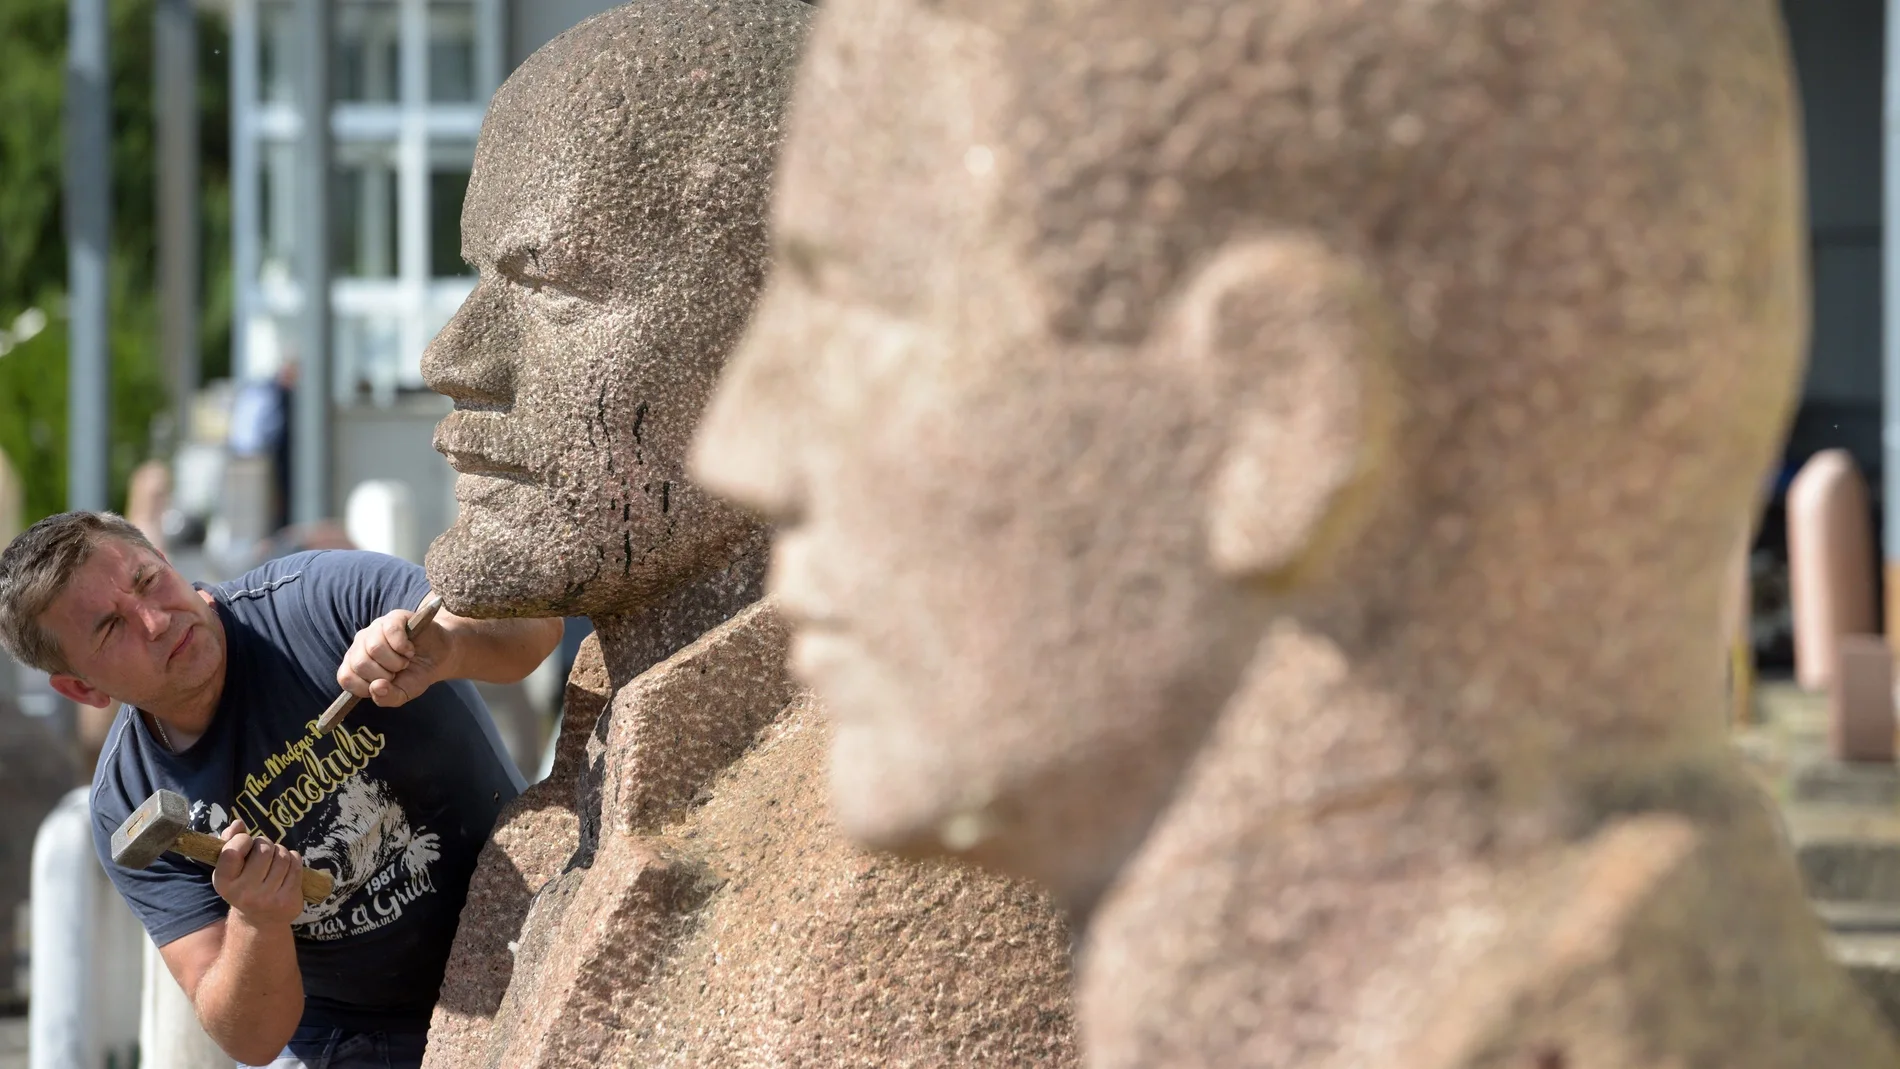 Estatuas de Lenin y Stalin